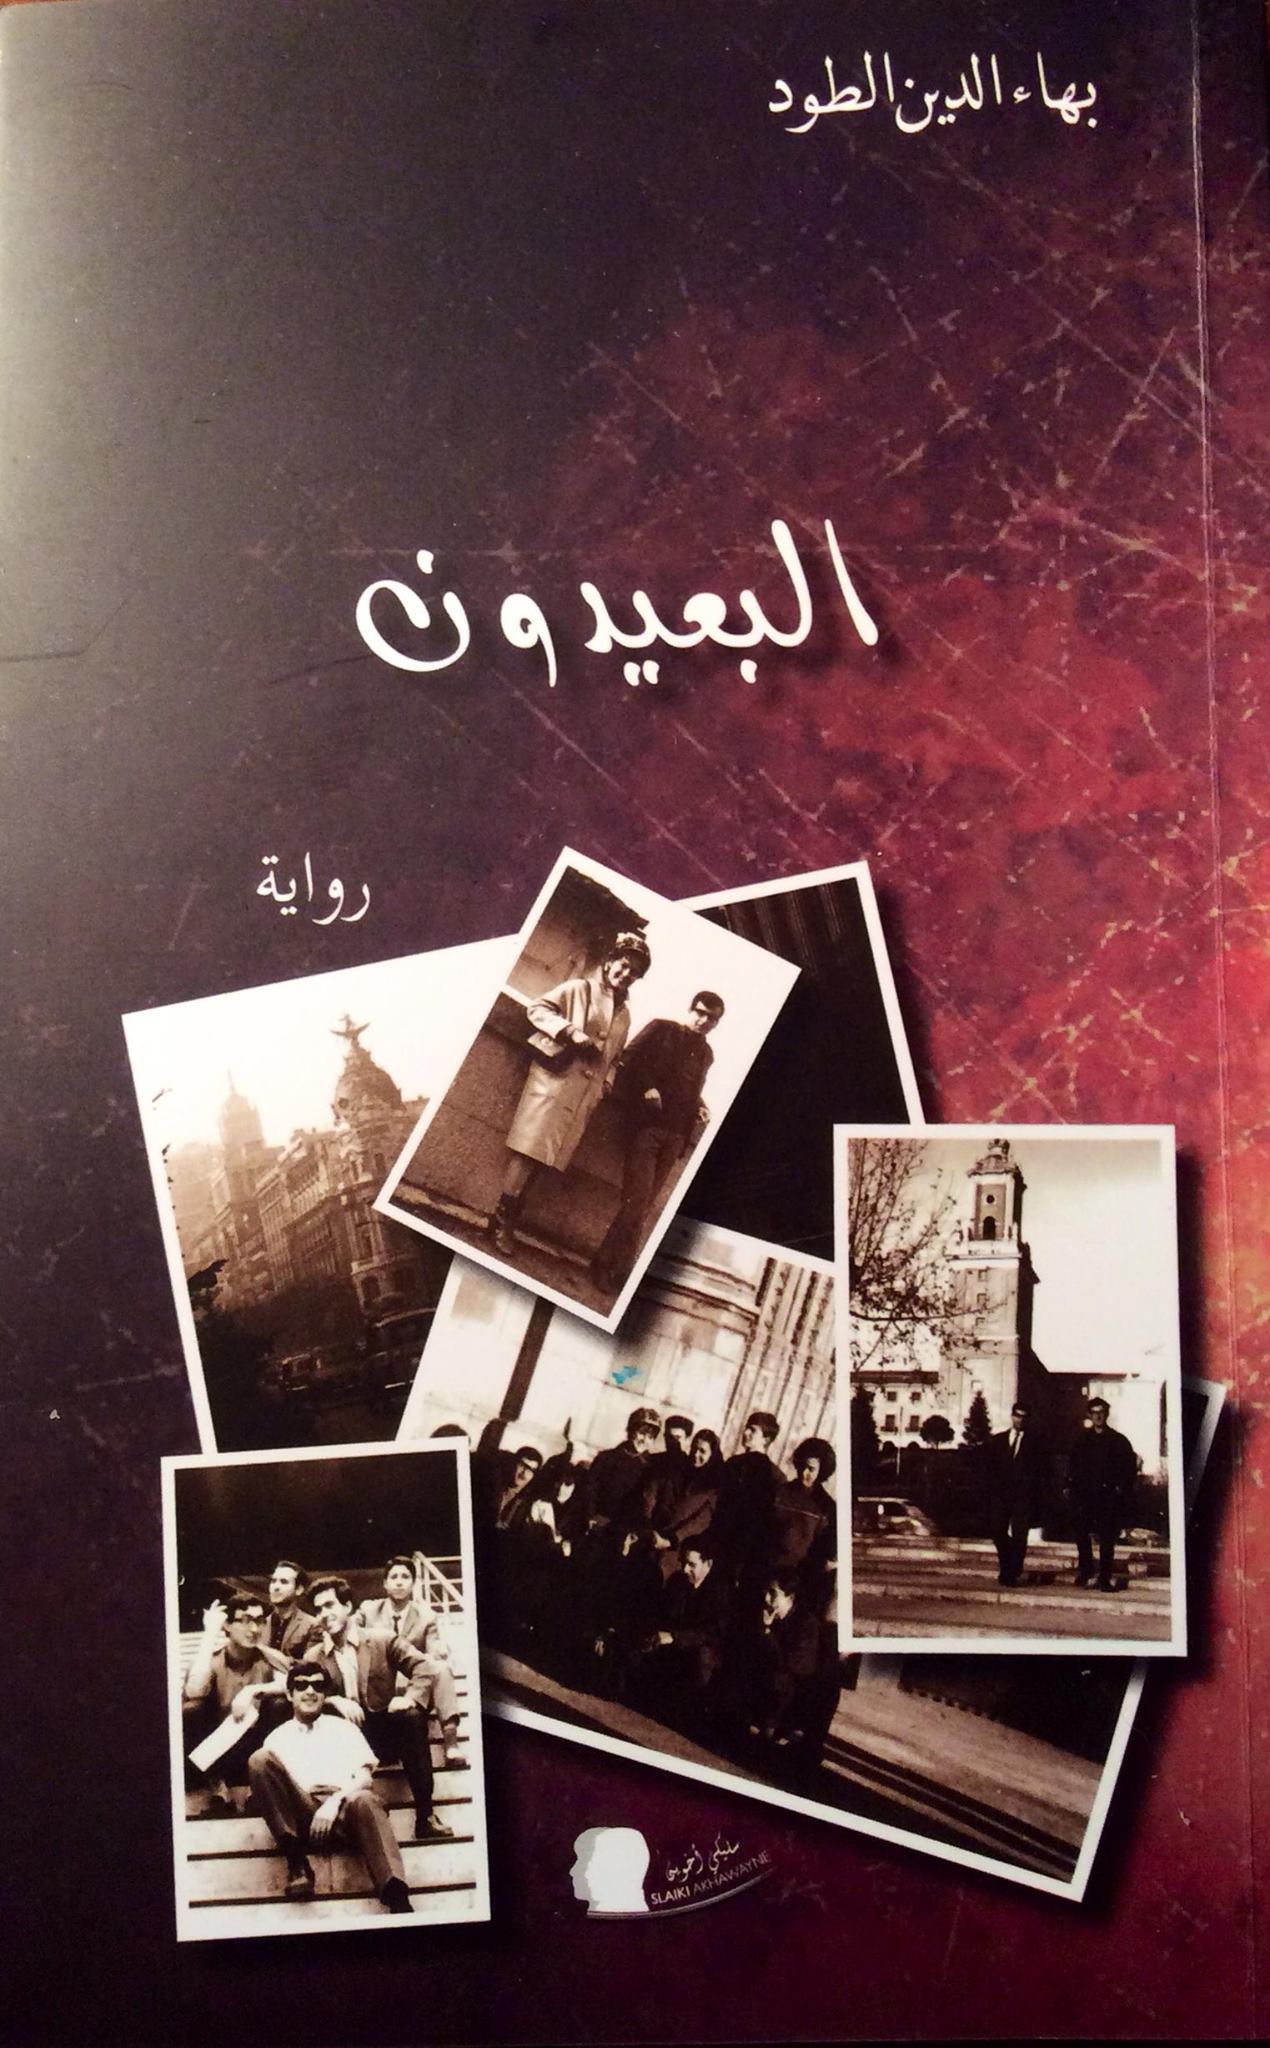 البعيدون الطبعة المغربية منشورات سليكي بطنجة.jpg